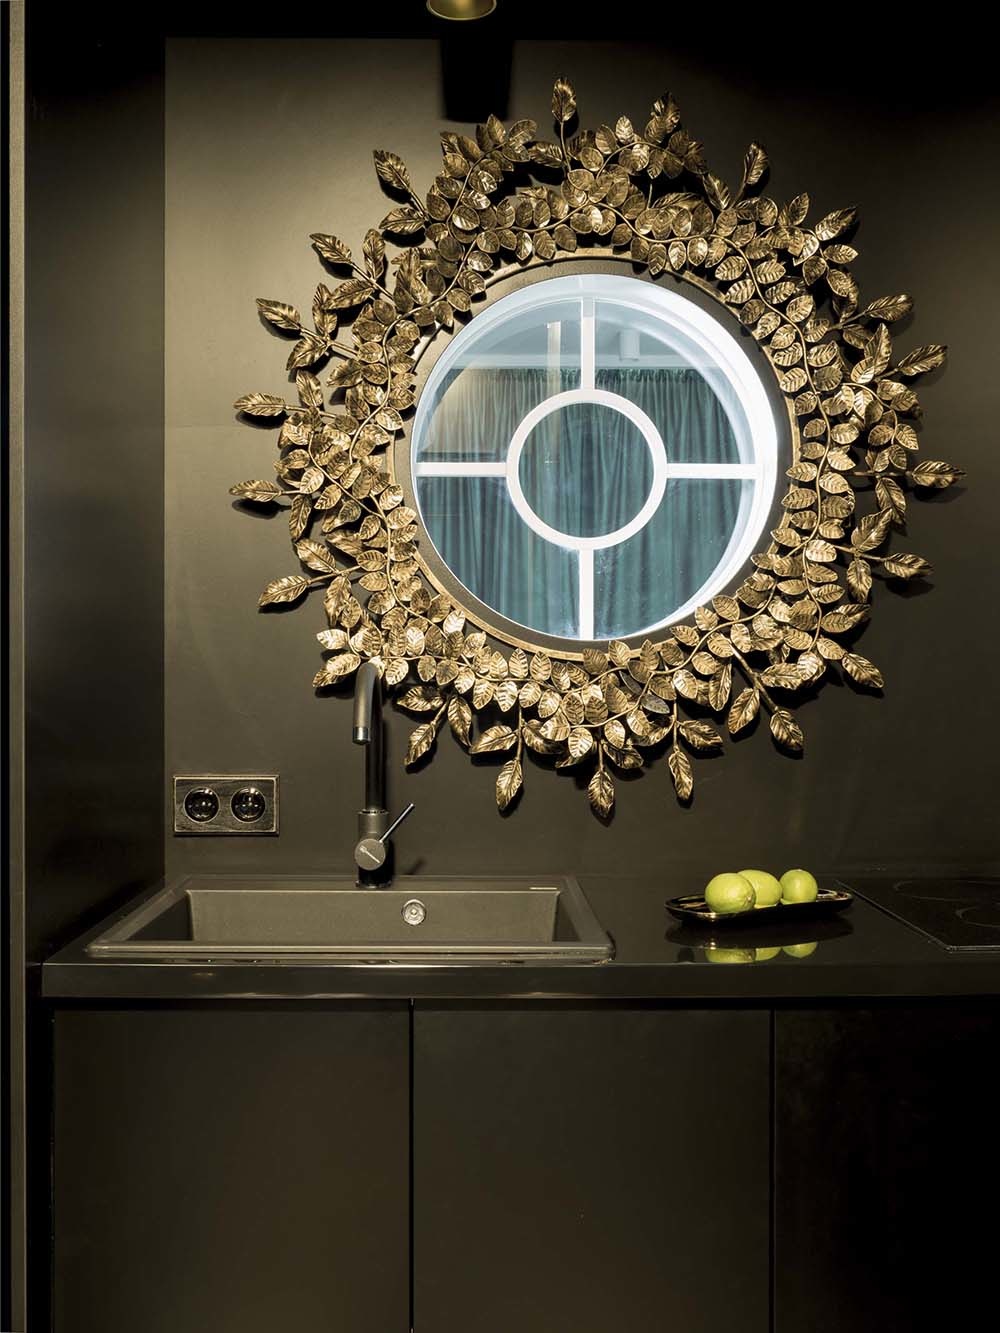 Thoạt nhìn, bạn sẽ ngỡ trên bồn rửa là gương soi như thường thấy đúng không nào? Thật ra, đây là 1 cửa sổ hình tròn kết nối phòng bếp và phòng khách phía bên kia. viền khung là những lá mạ vàng đồng cầu kỳ, bên trong tích hợp đèn chiếu sáng tiện nghi.